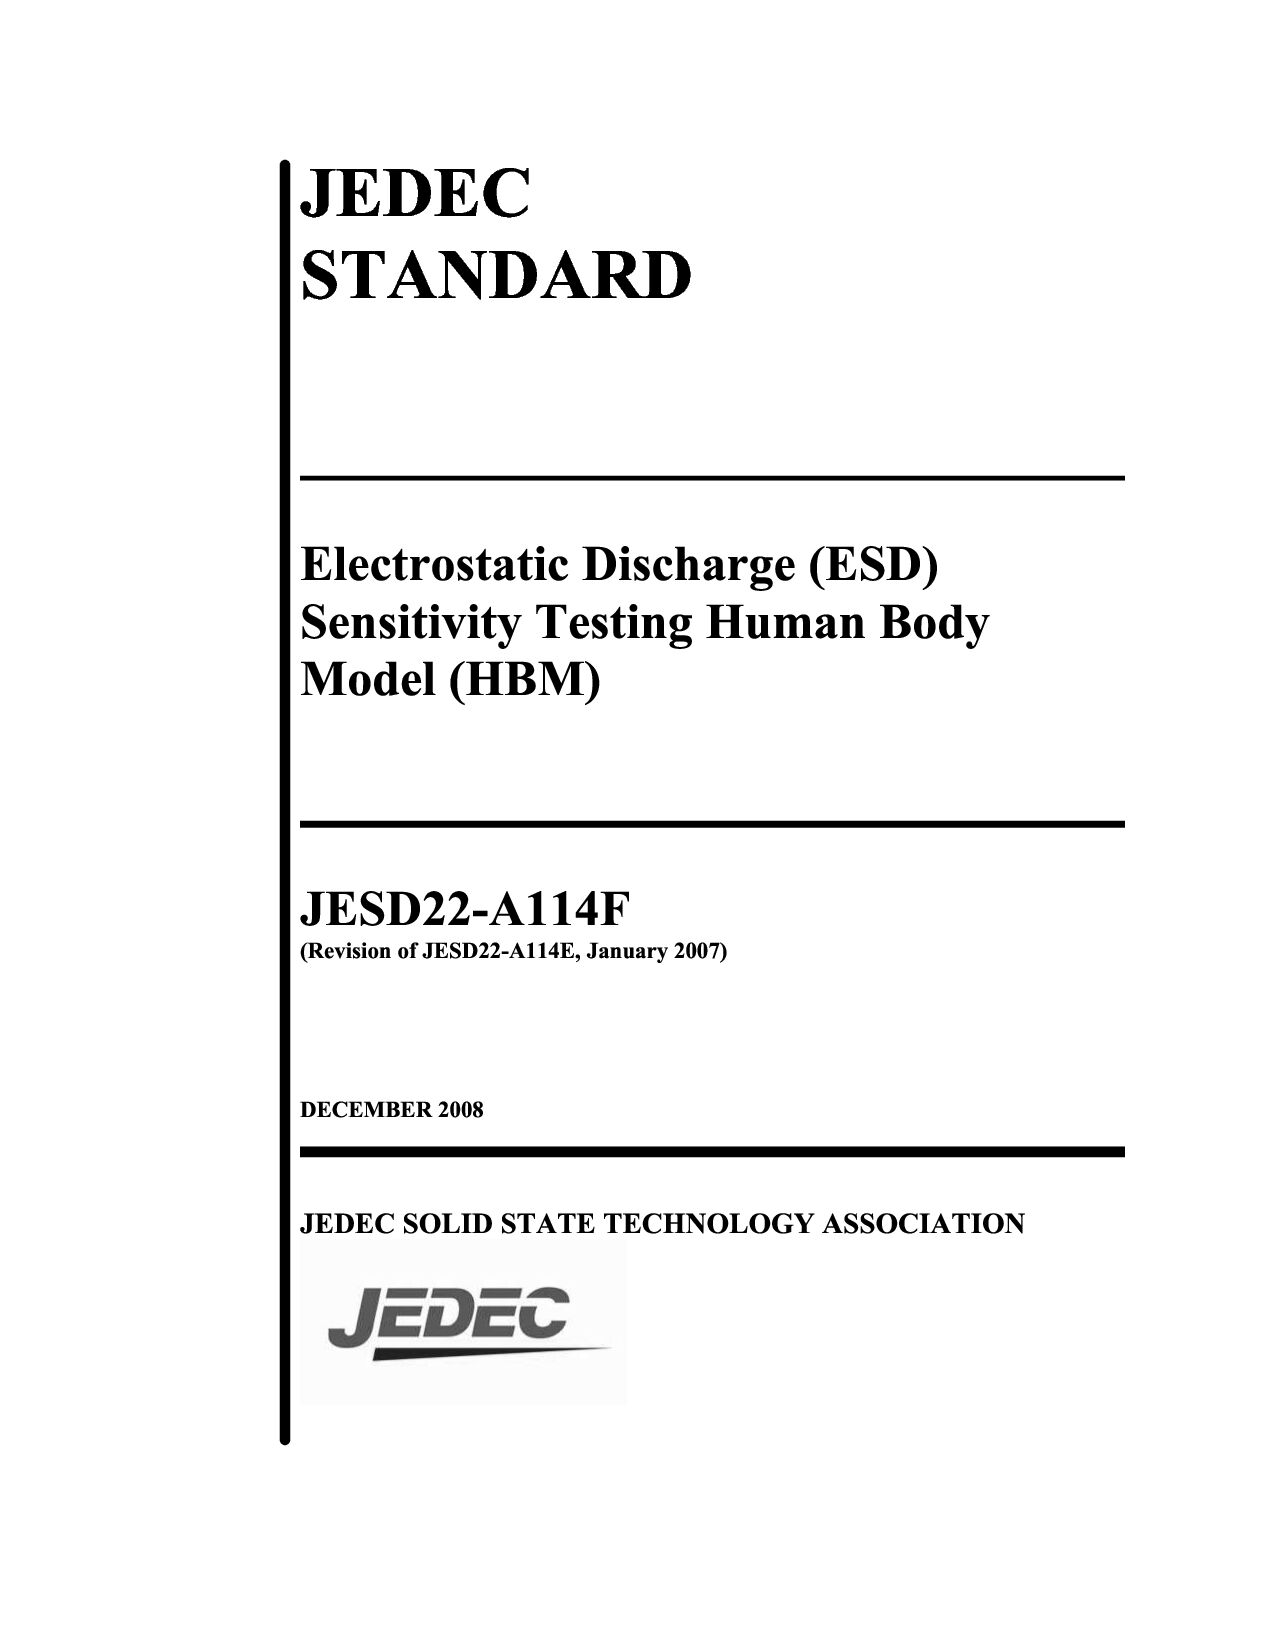 JEDEC JESD22-A114F-2008